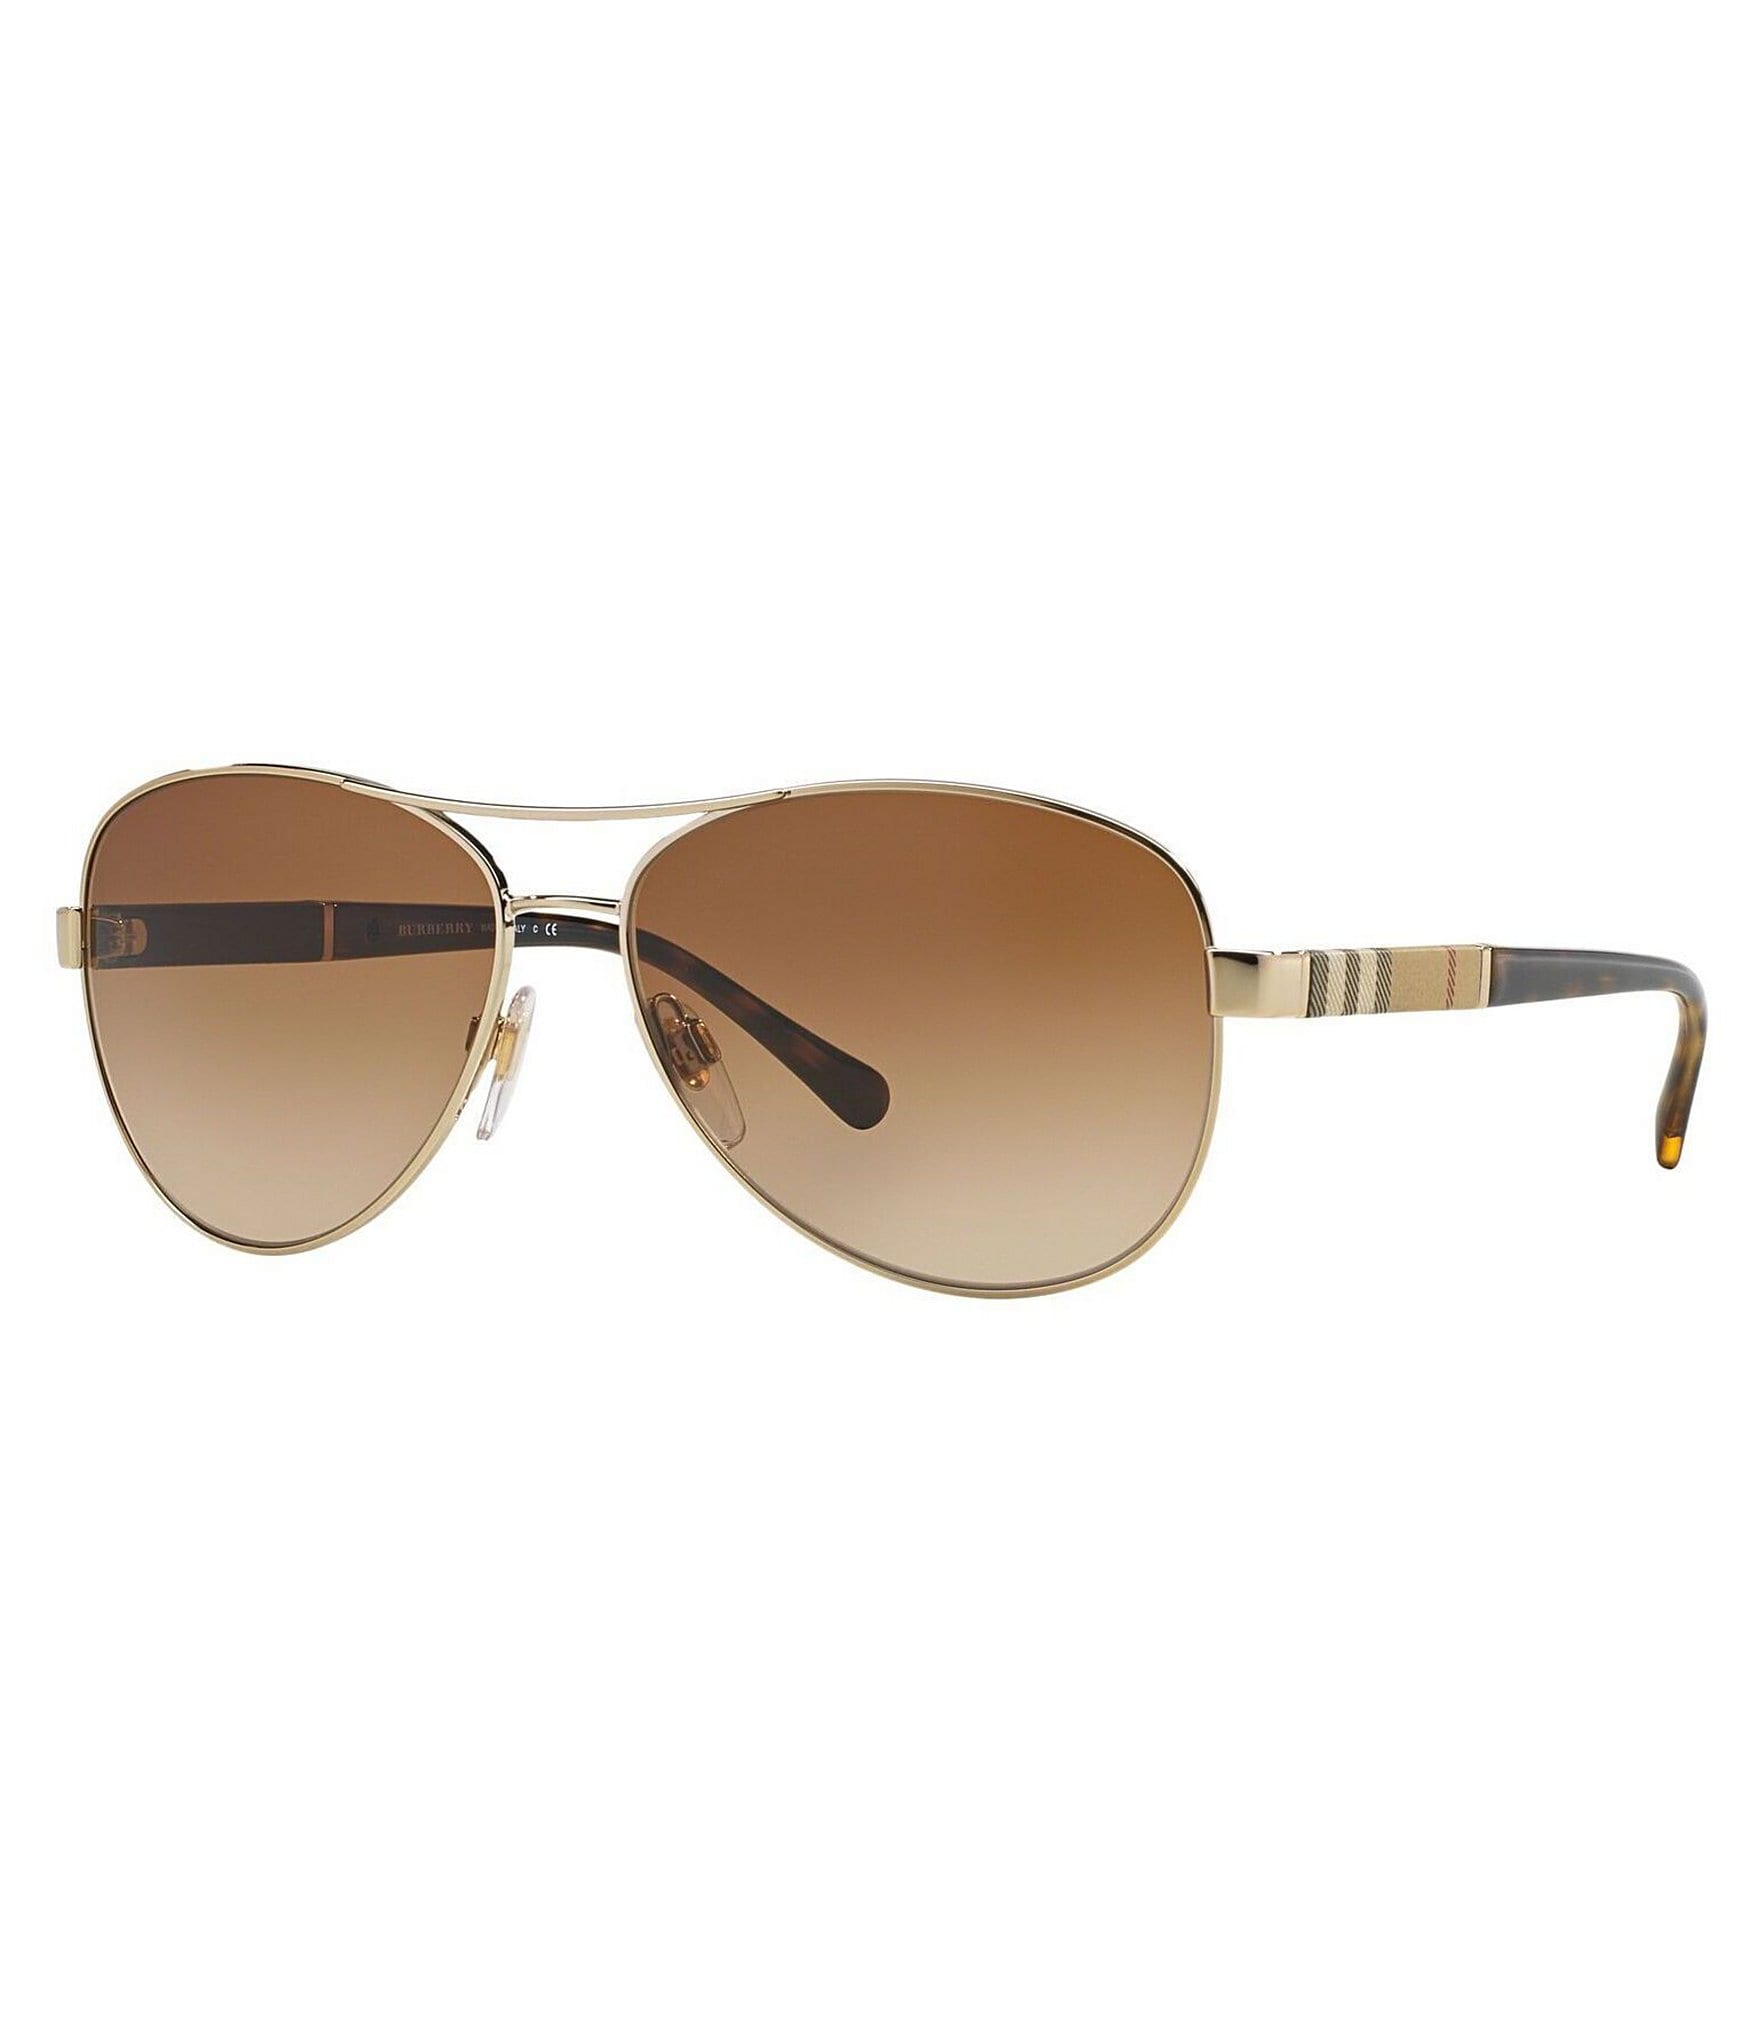 Buy Burberry Women's BE 3080 Aviator Sunglasses Online at desertcartINDIA